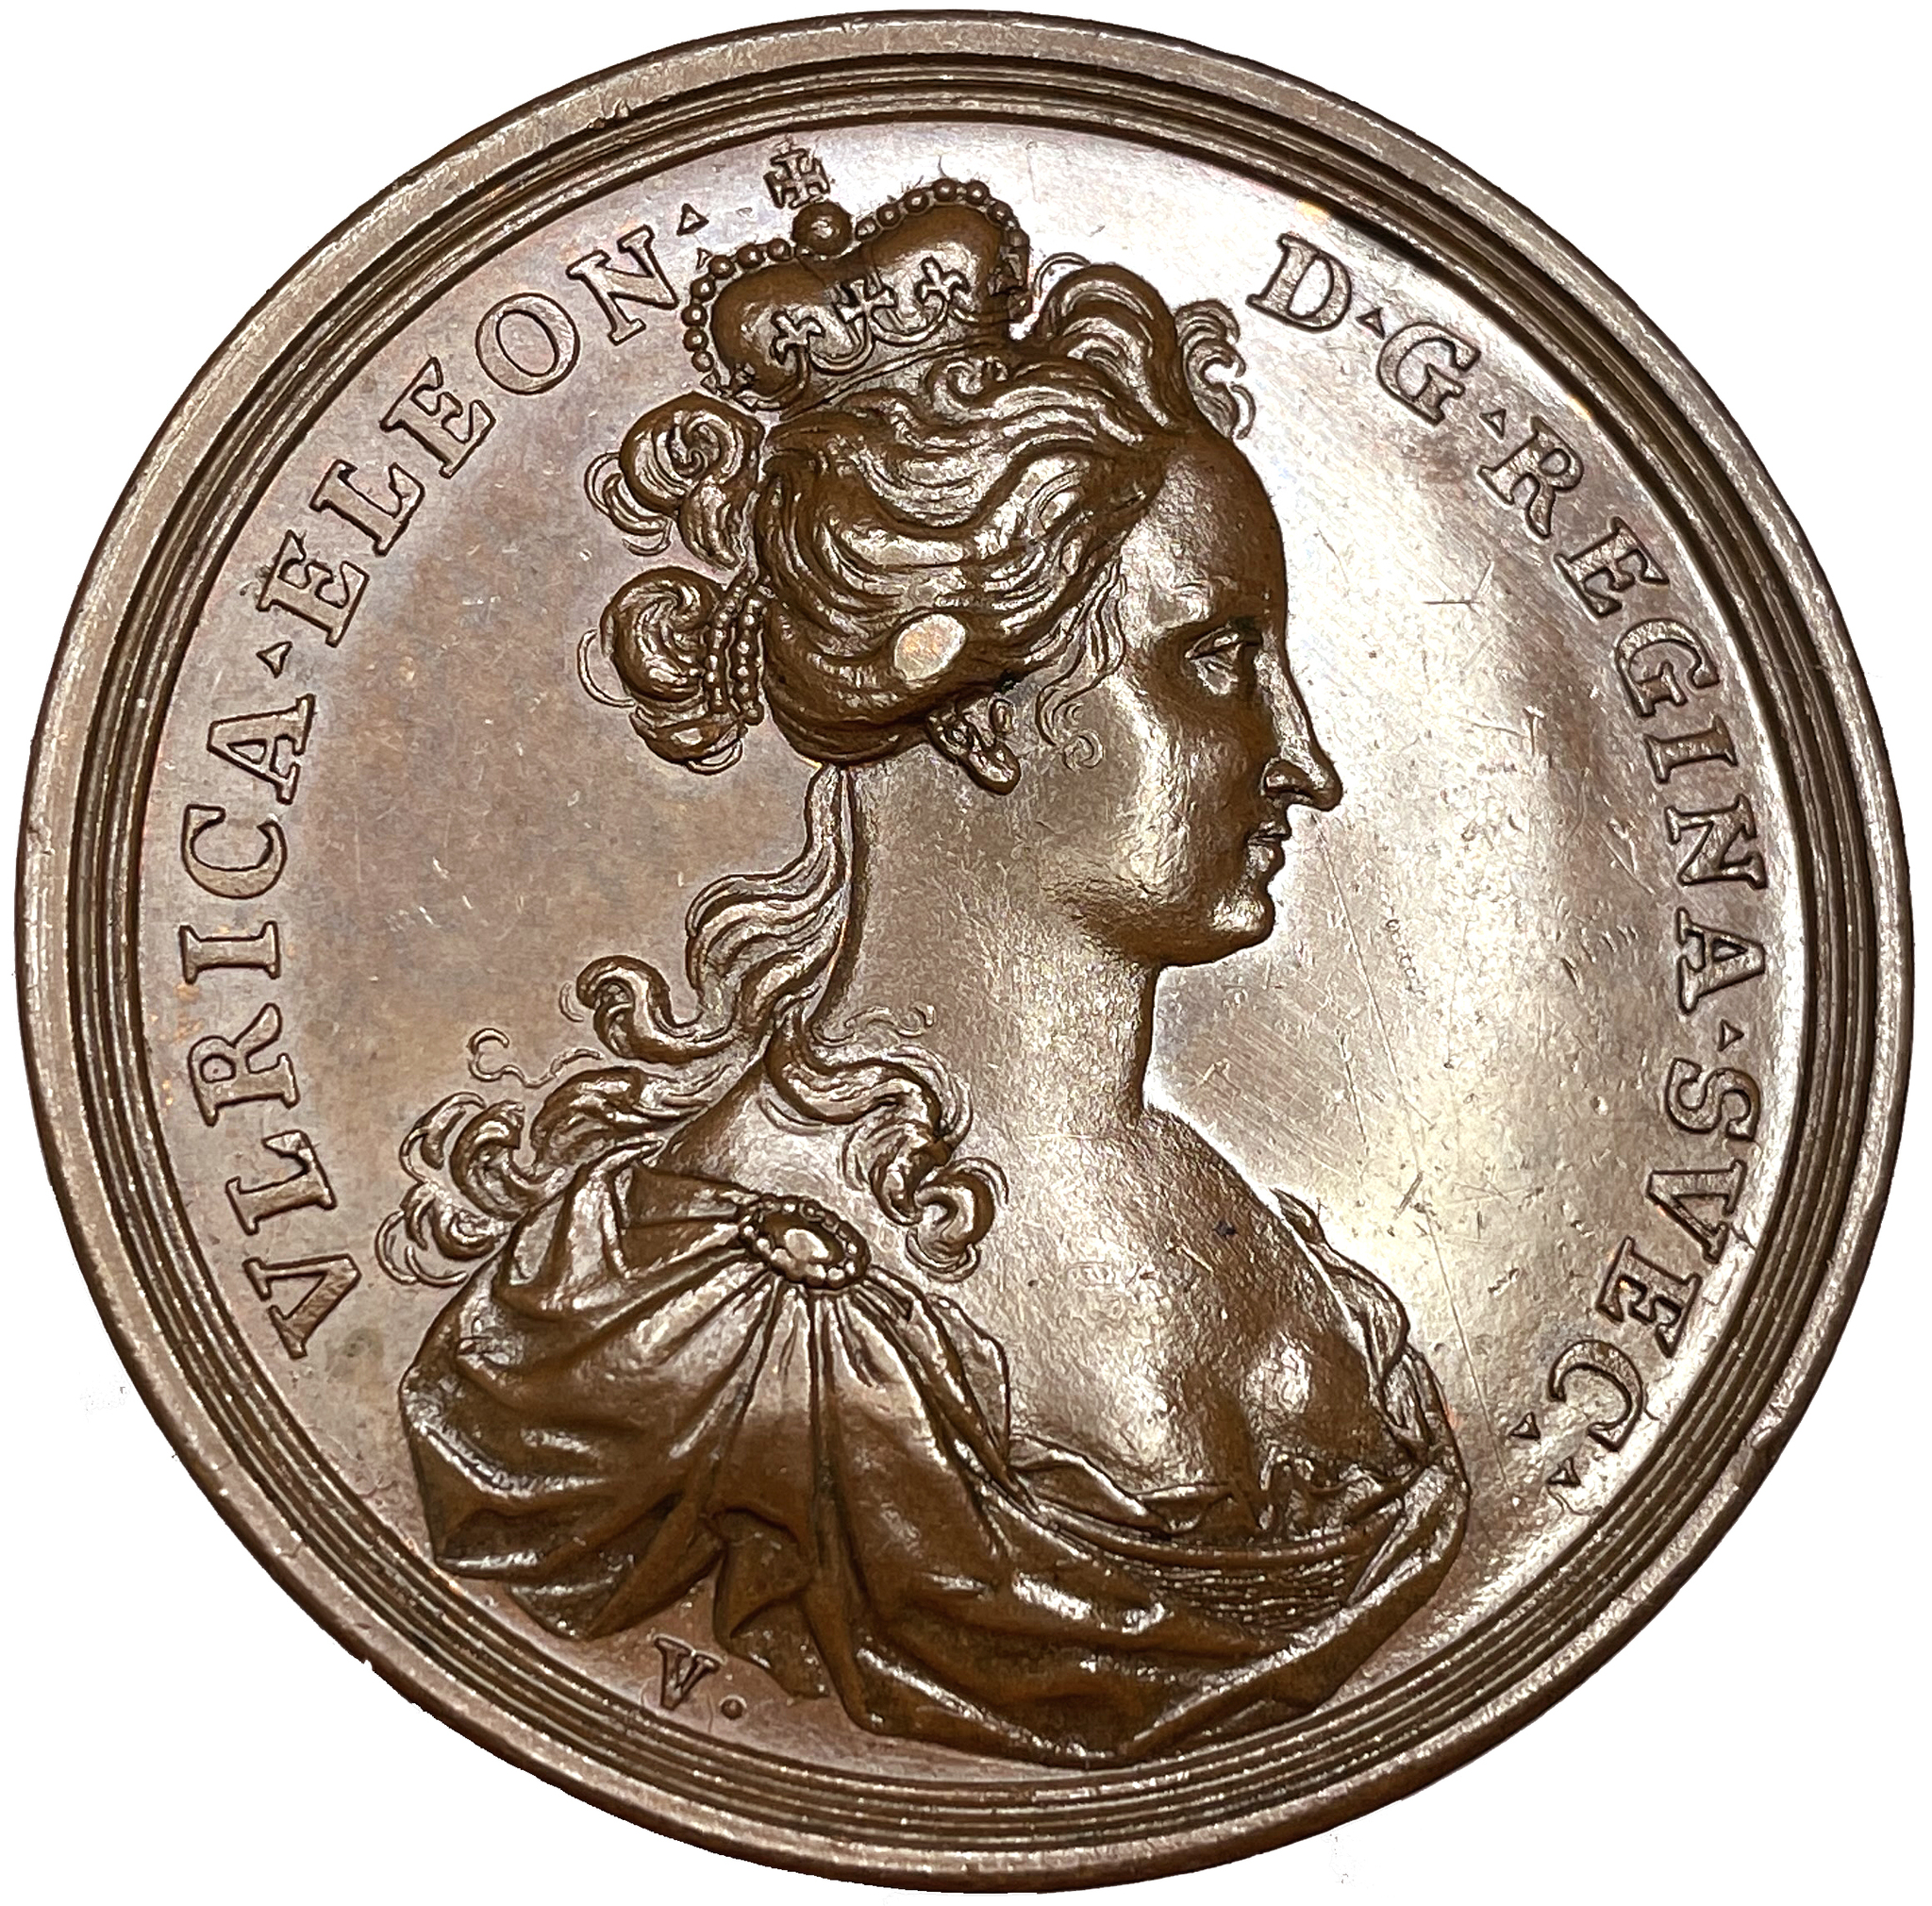 Ulrika Eleonoras kröning 1719 av Vestner - RR i brons